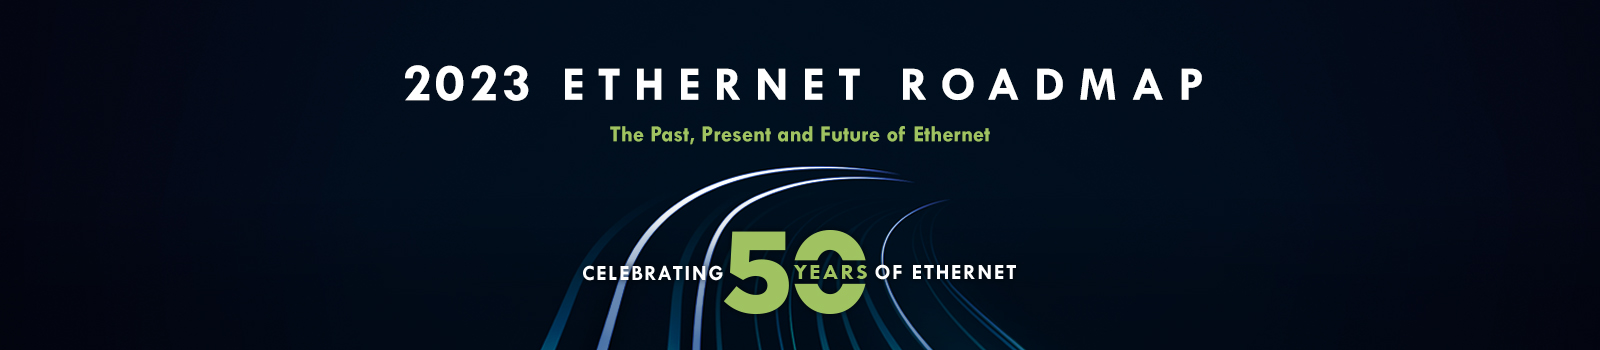 2023 Ethernet Roadmap banner image